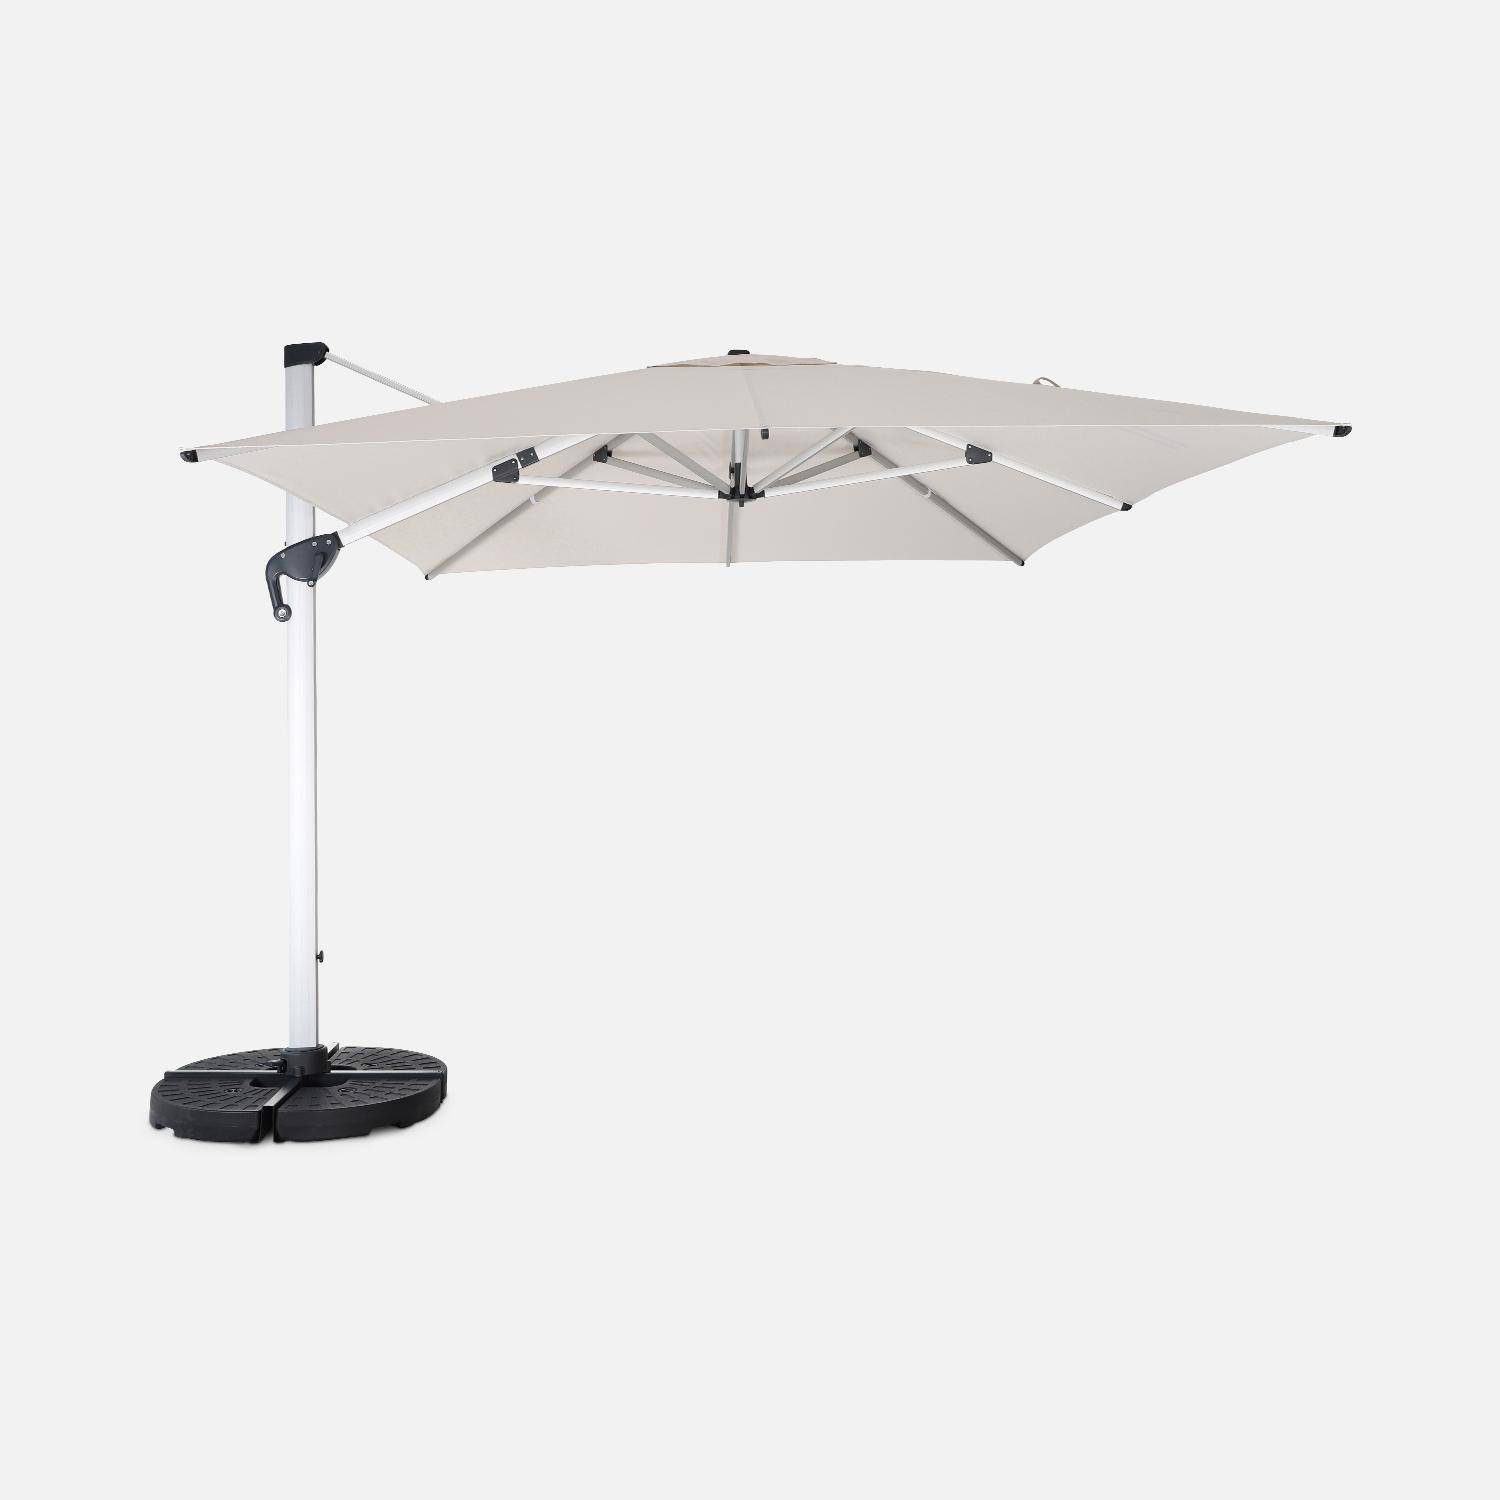 Topkwaliteit parasol, 3x4m, beige polyester doek, geanodiseerd aluminium frame, hoes inbegrepen,sweeek,Photo2